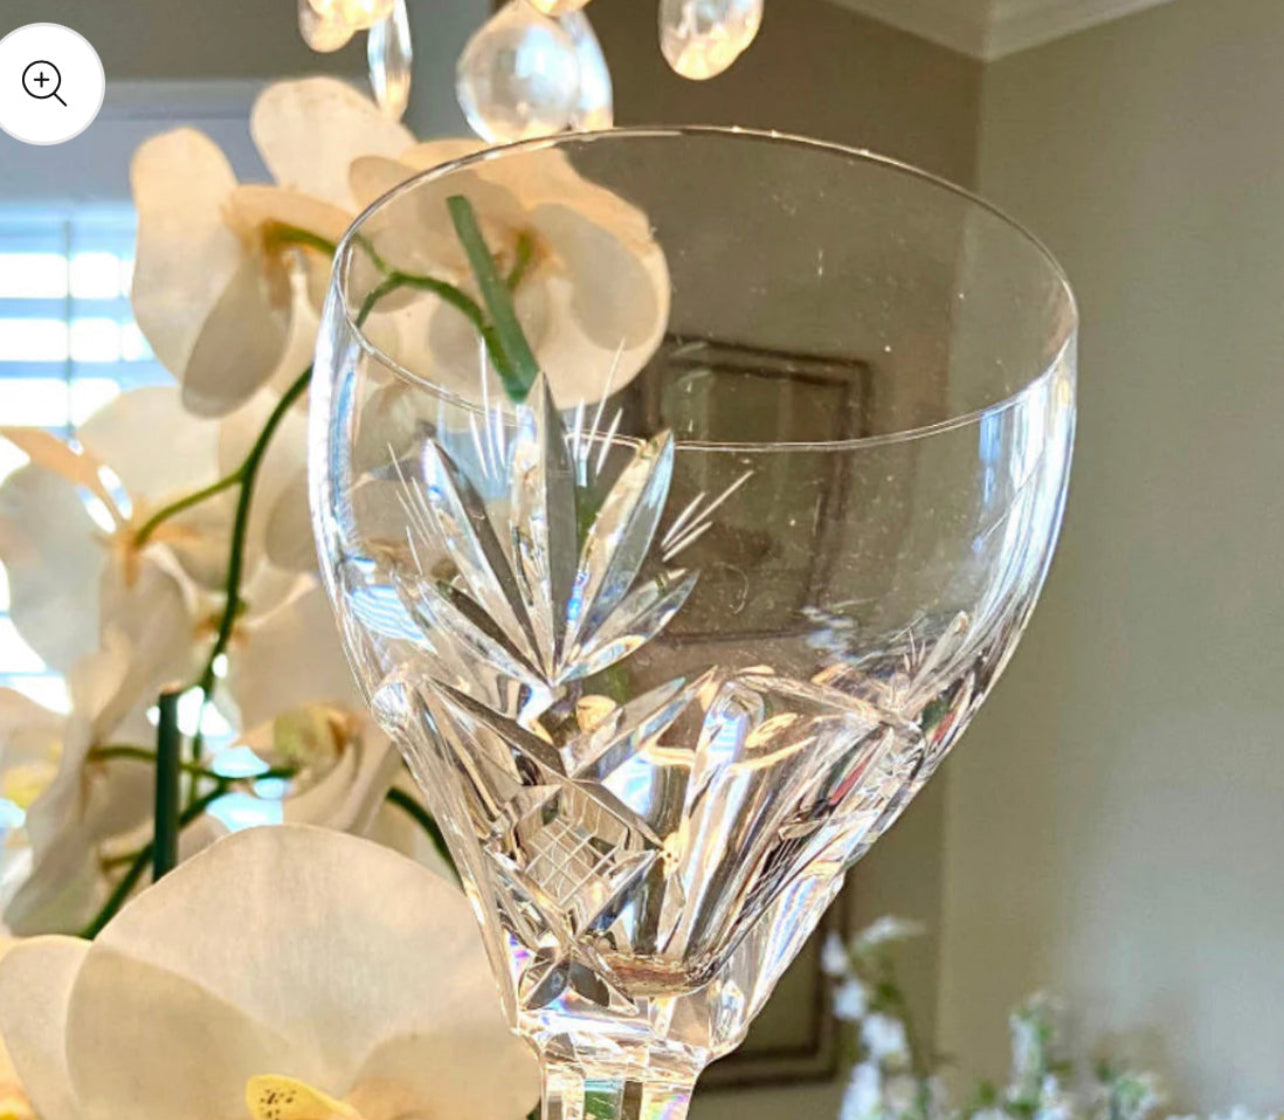 Set (10) stunning vintage crystal wine glasses by designer Royal Leerdem of the Netherlands.